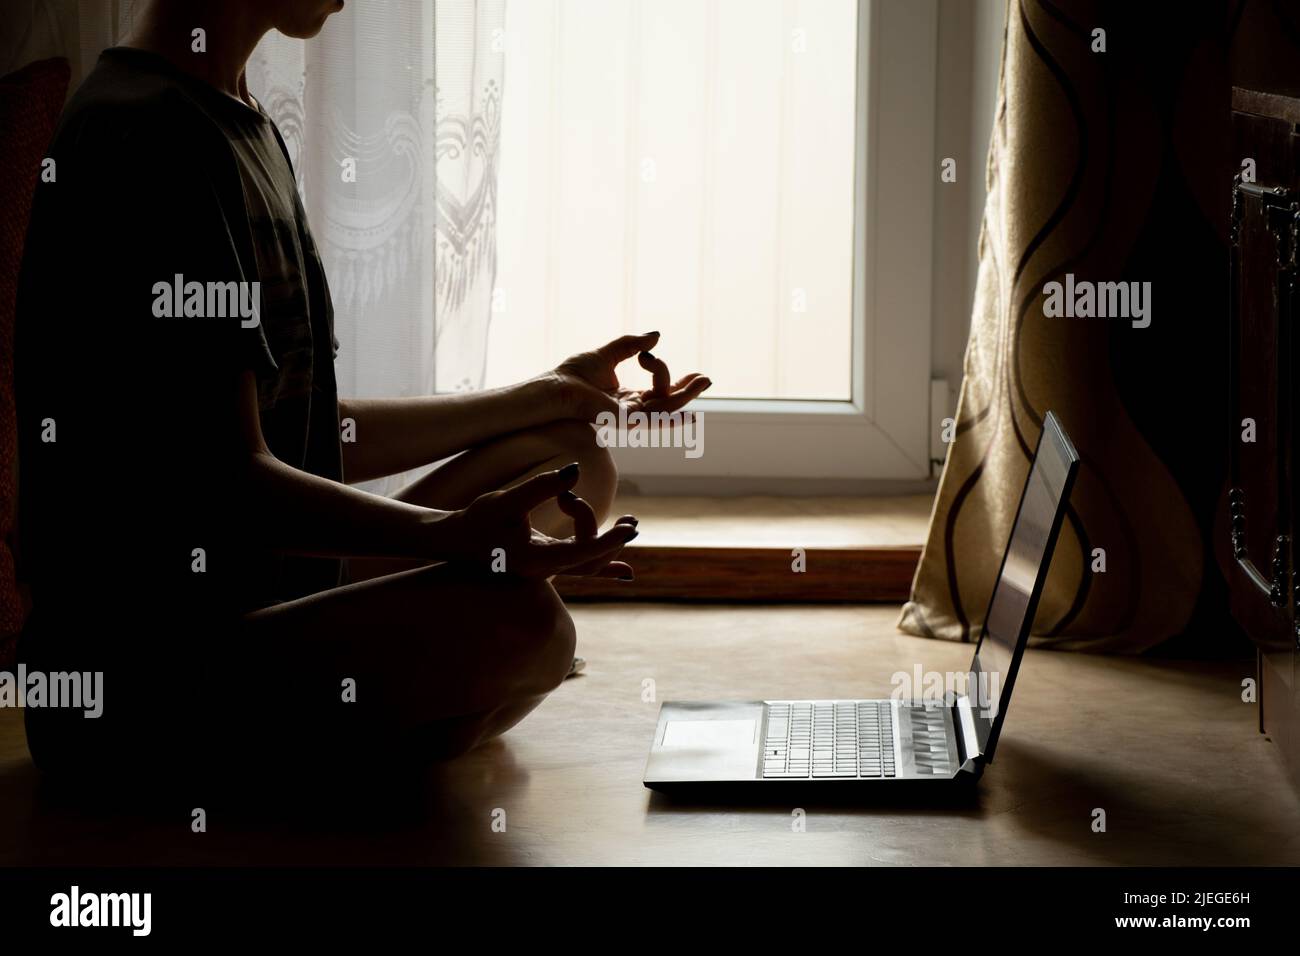 Une fille fait du yoga près d'un ordinateur portable sur le sol d'une maison près d'une fenêtre dans l'obscurité, une leçon vidéo en ligne sur la méditation, le yoga et miditatsi Banque D'Images